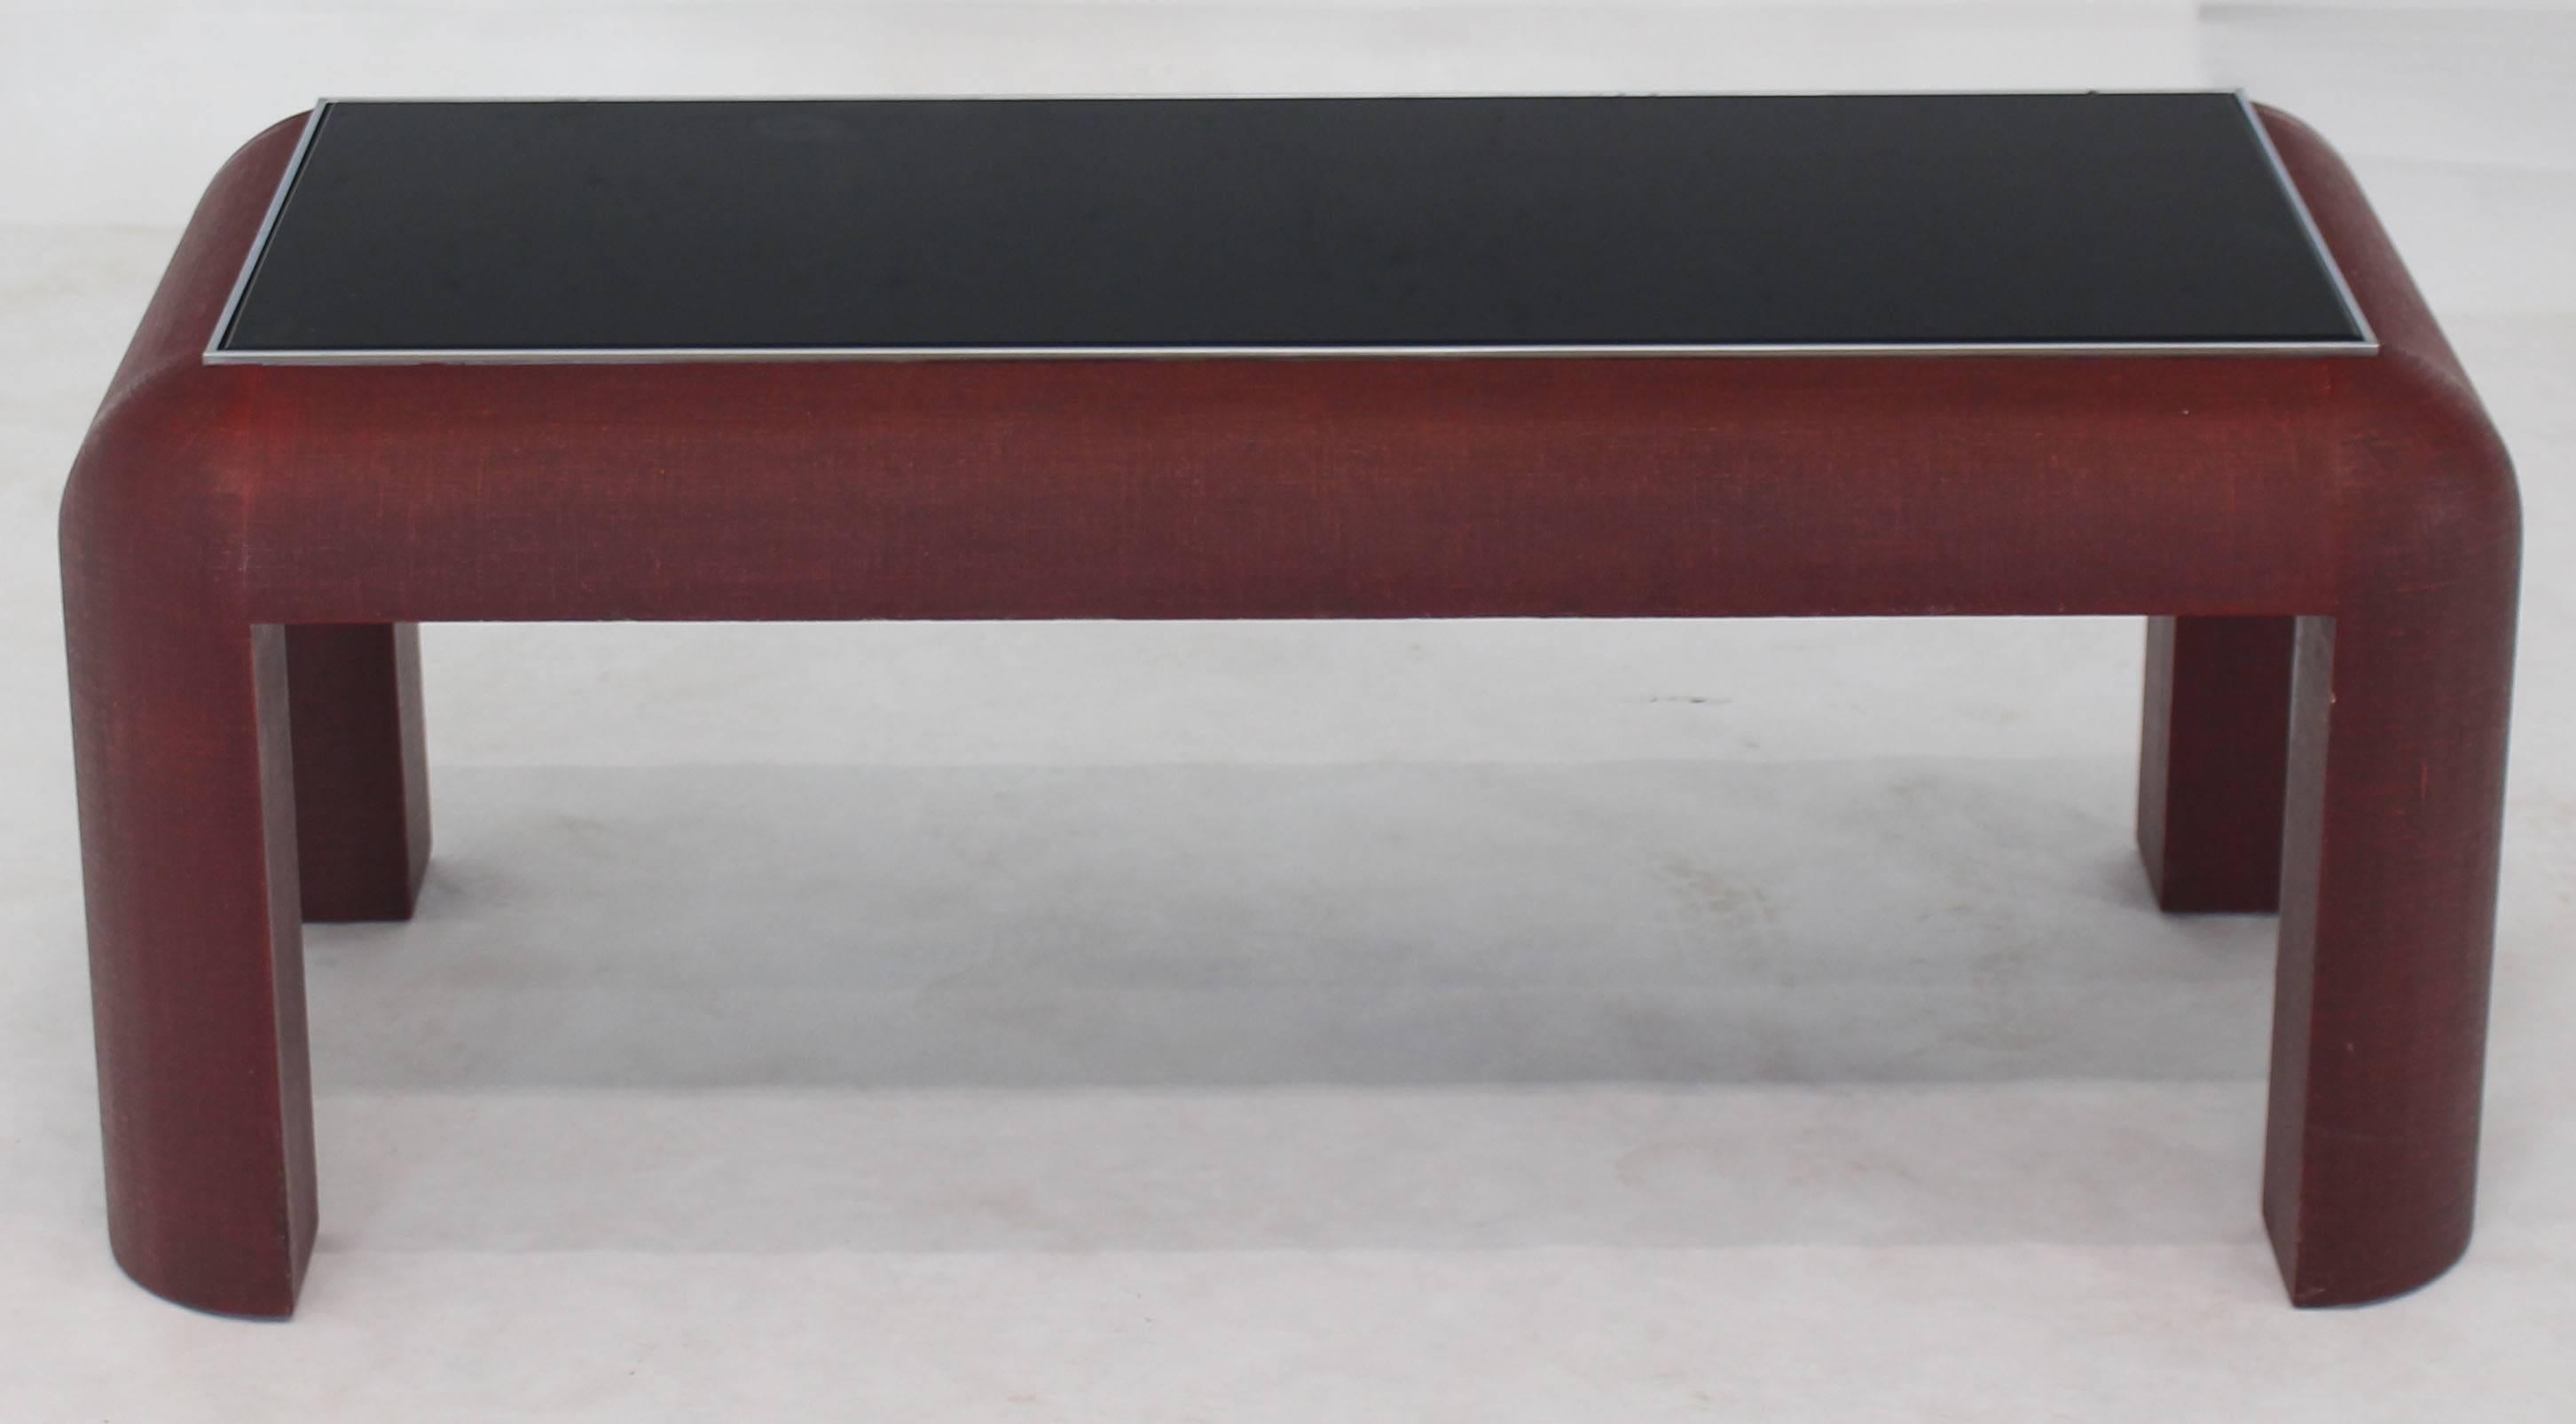 Table basse rectangulaire moderne du milieu du siècle, enveloppée de tissu et laquée, avec un épais plateau en verre noir dans un cadre chromé.
